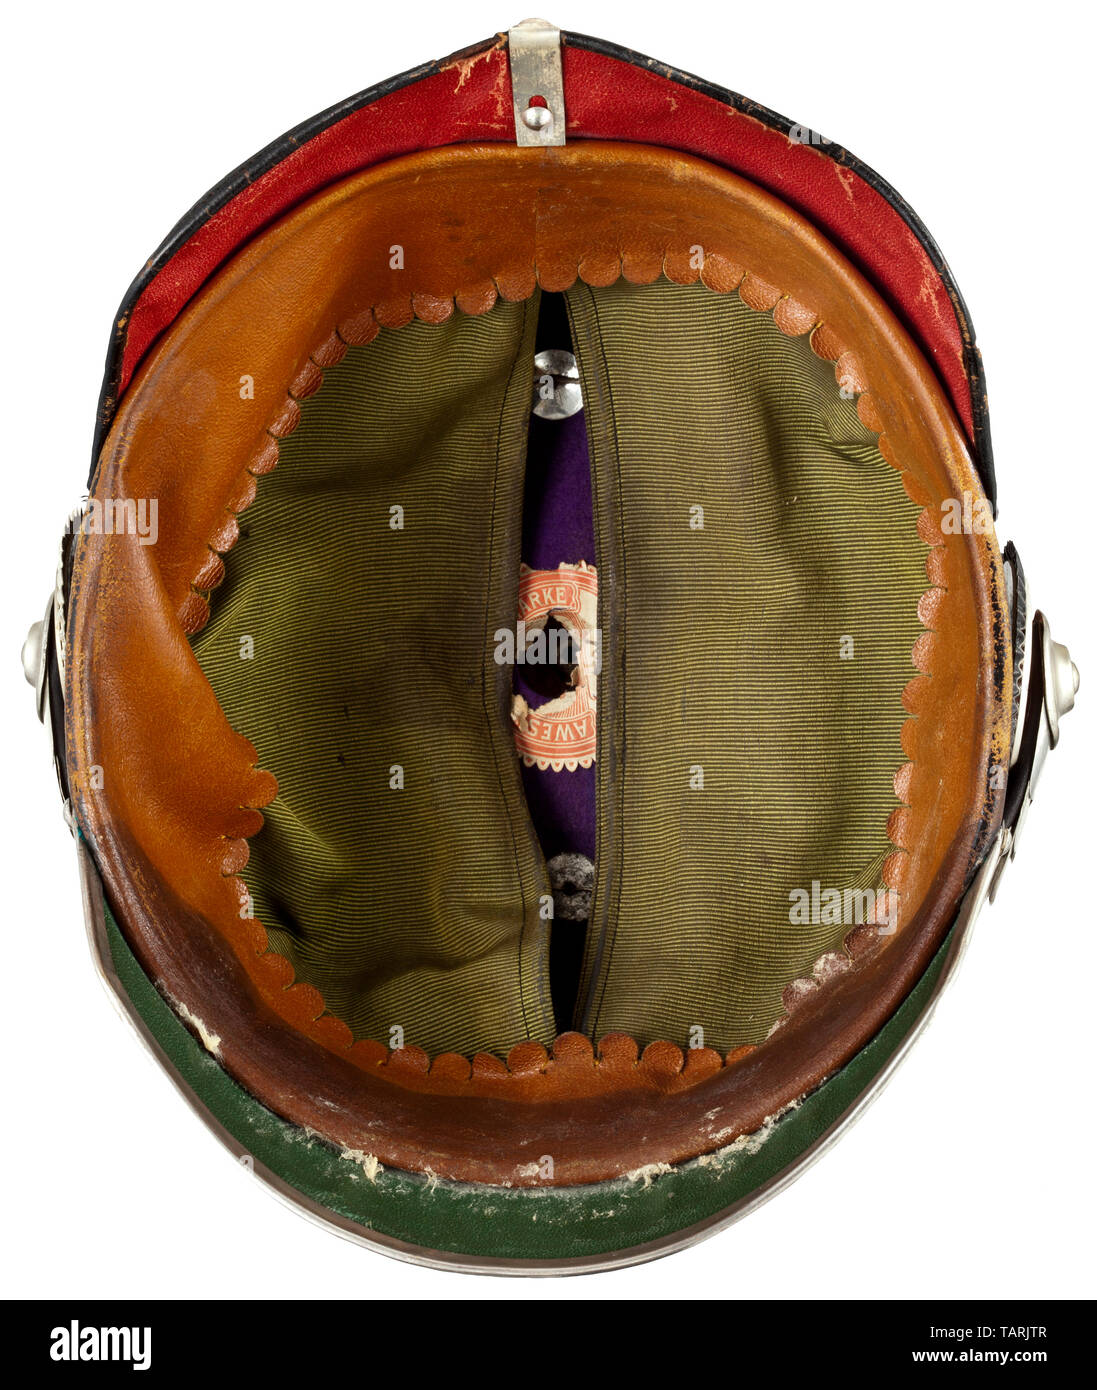 Un casco M 1886/1913 per i generali, presentano elemento, incorporante un funzionario del casco originale con re-argentata raccordi e un moderno medaglione. Verniciato nero, altamente lucido cranio con placcati argento raccordi, l'interno inoltre rivestiti in viola-feltro colorati, con l'etichetta del costruttore "AWES Marke" e il formato '57'. Il parasole posteriore fissata nuovamente. Le visiere rivestite in verde e in rosso, rispettivamente, ammenda in pelle marrone con Fascia assorbisudore nervata verde camicia di seta, cuscinetti invalidati timbro di apparecchiature. Sulla parte anteriore, splinted base cruciforme con star-, Additional-Rights-Clearance-Info-Not-Available Foto Stock